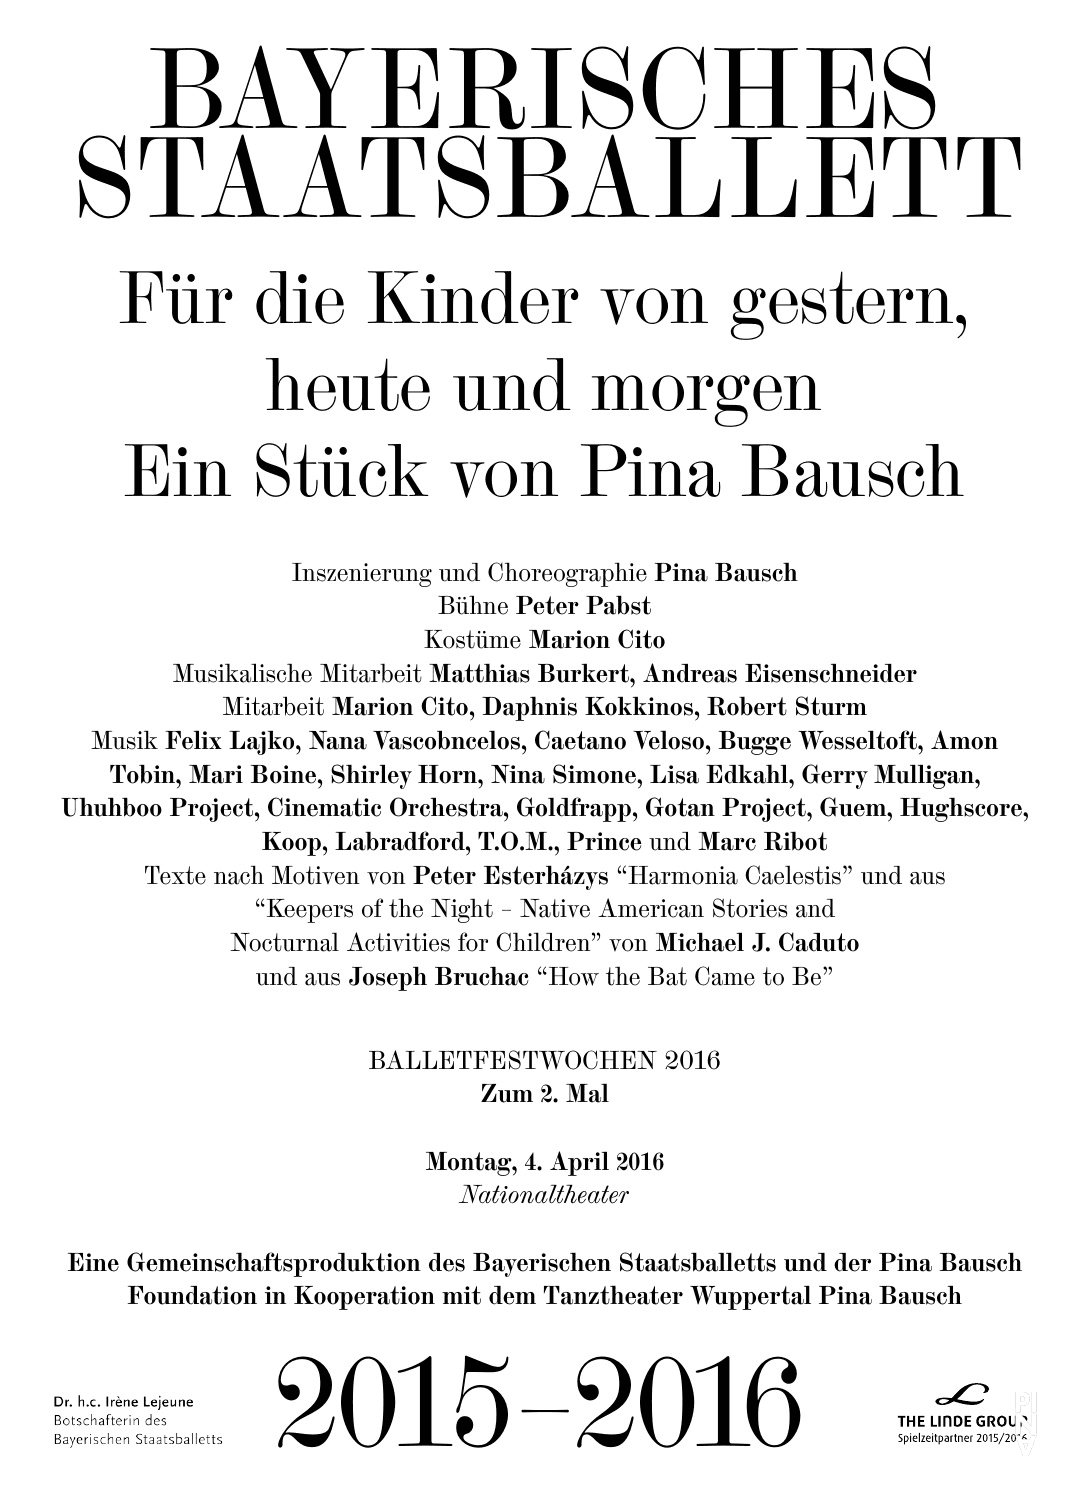 Abendzettel zu „Für die Kinder von gestern, heute und morgen“ von Pina Bausch mit Bayerisches Staatsballett in München, 4. April 2016